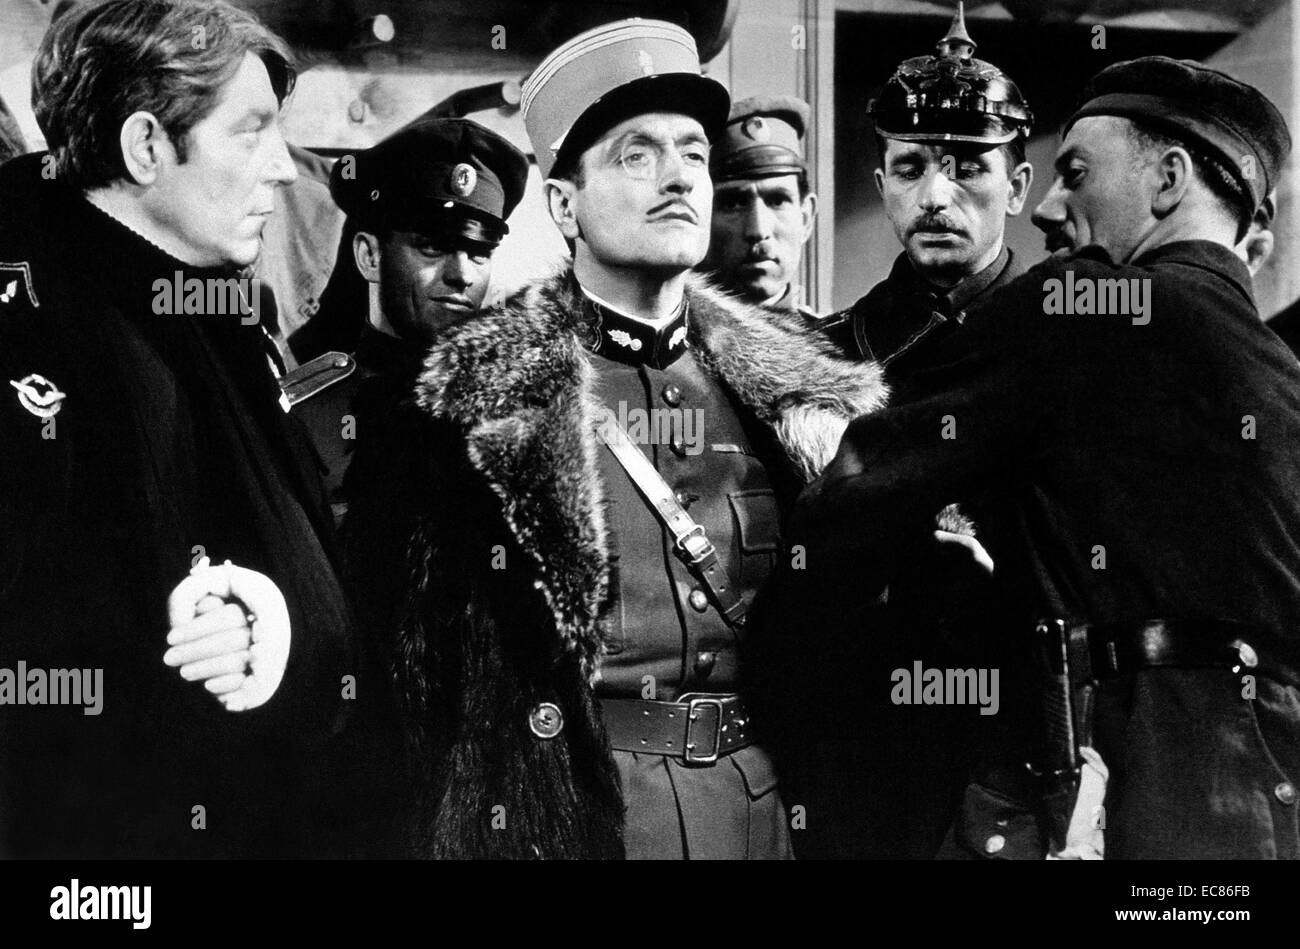 Película de 'La gran ilusión' guerra de película francesa dirigida por Jean Renoir (1894-1979) mirando a Jean Gabin, Dita Parlo, Pierre Fresnay. Fecha 1937 Foto de stock